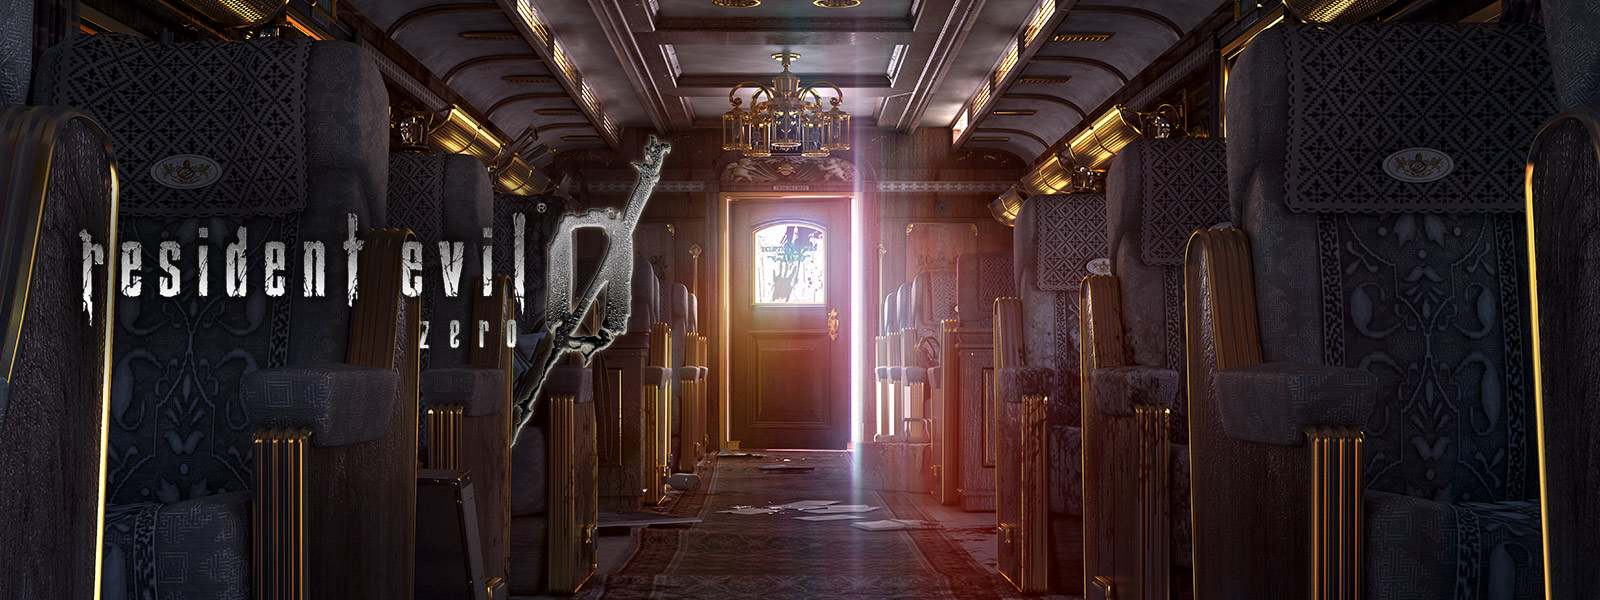 Resident Evil 0, skærmbillede af fancy interiør i en togvogn